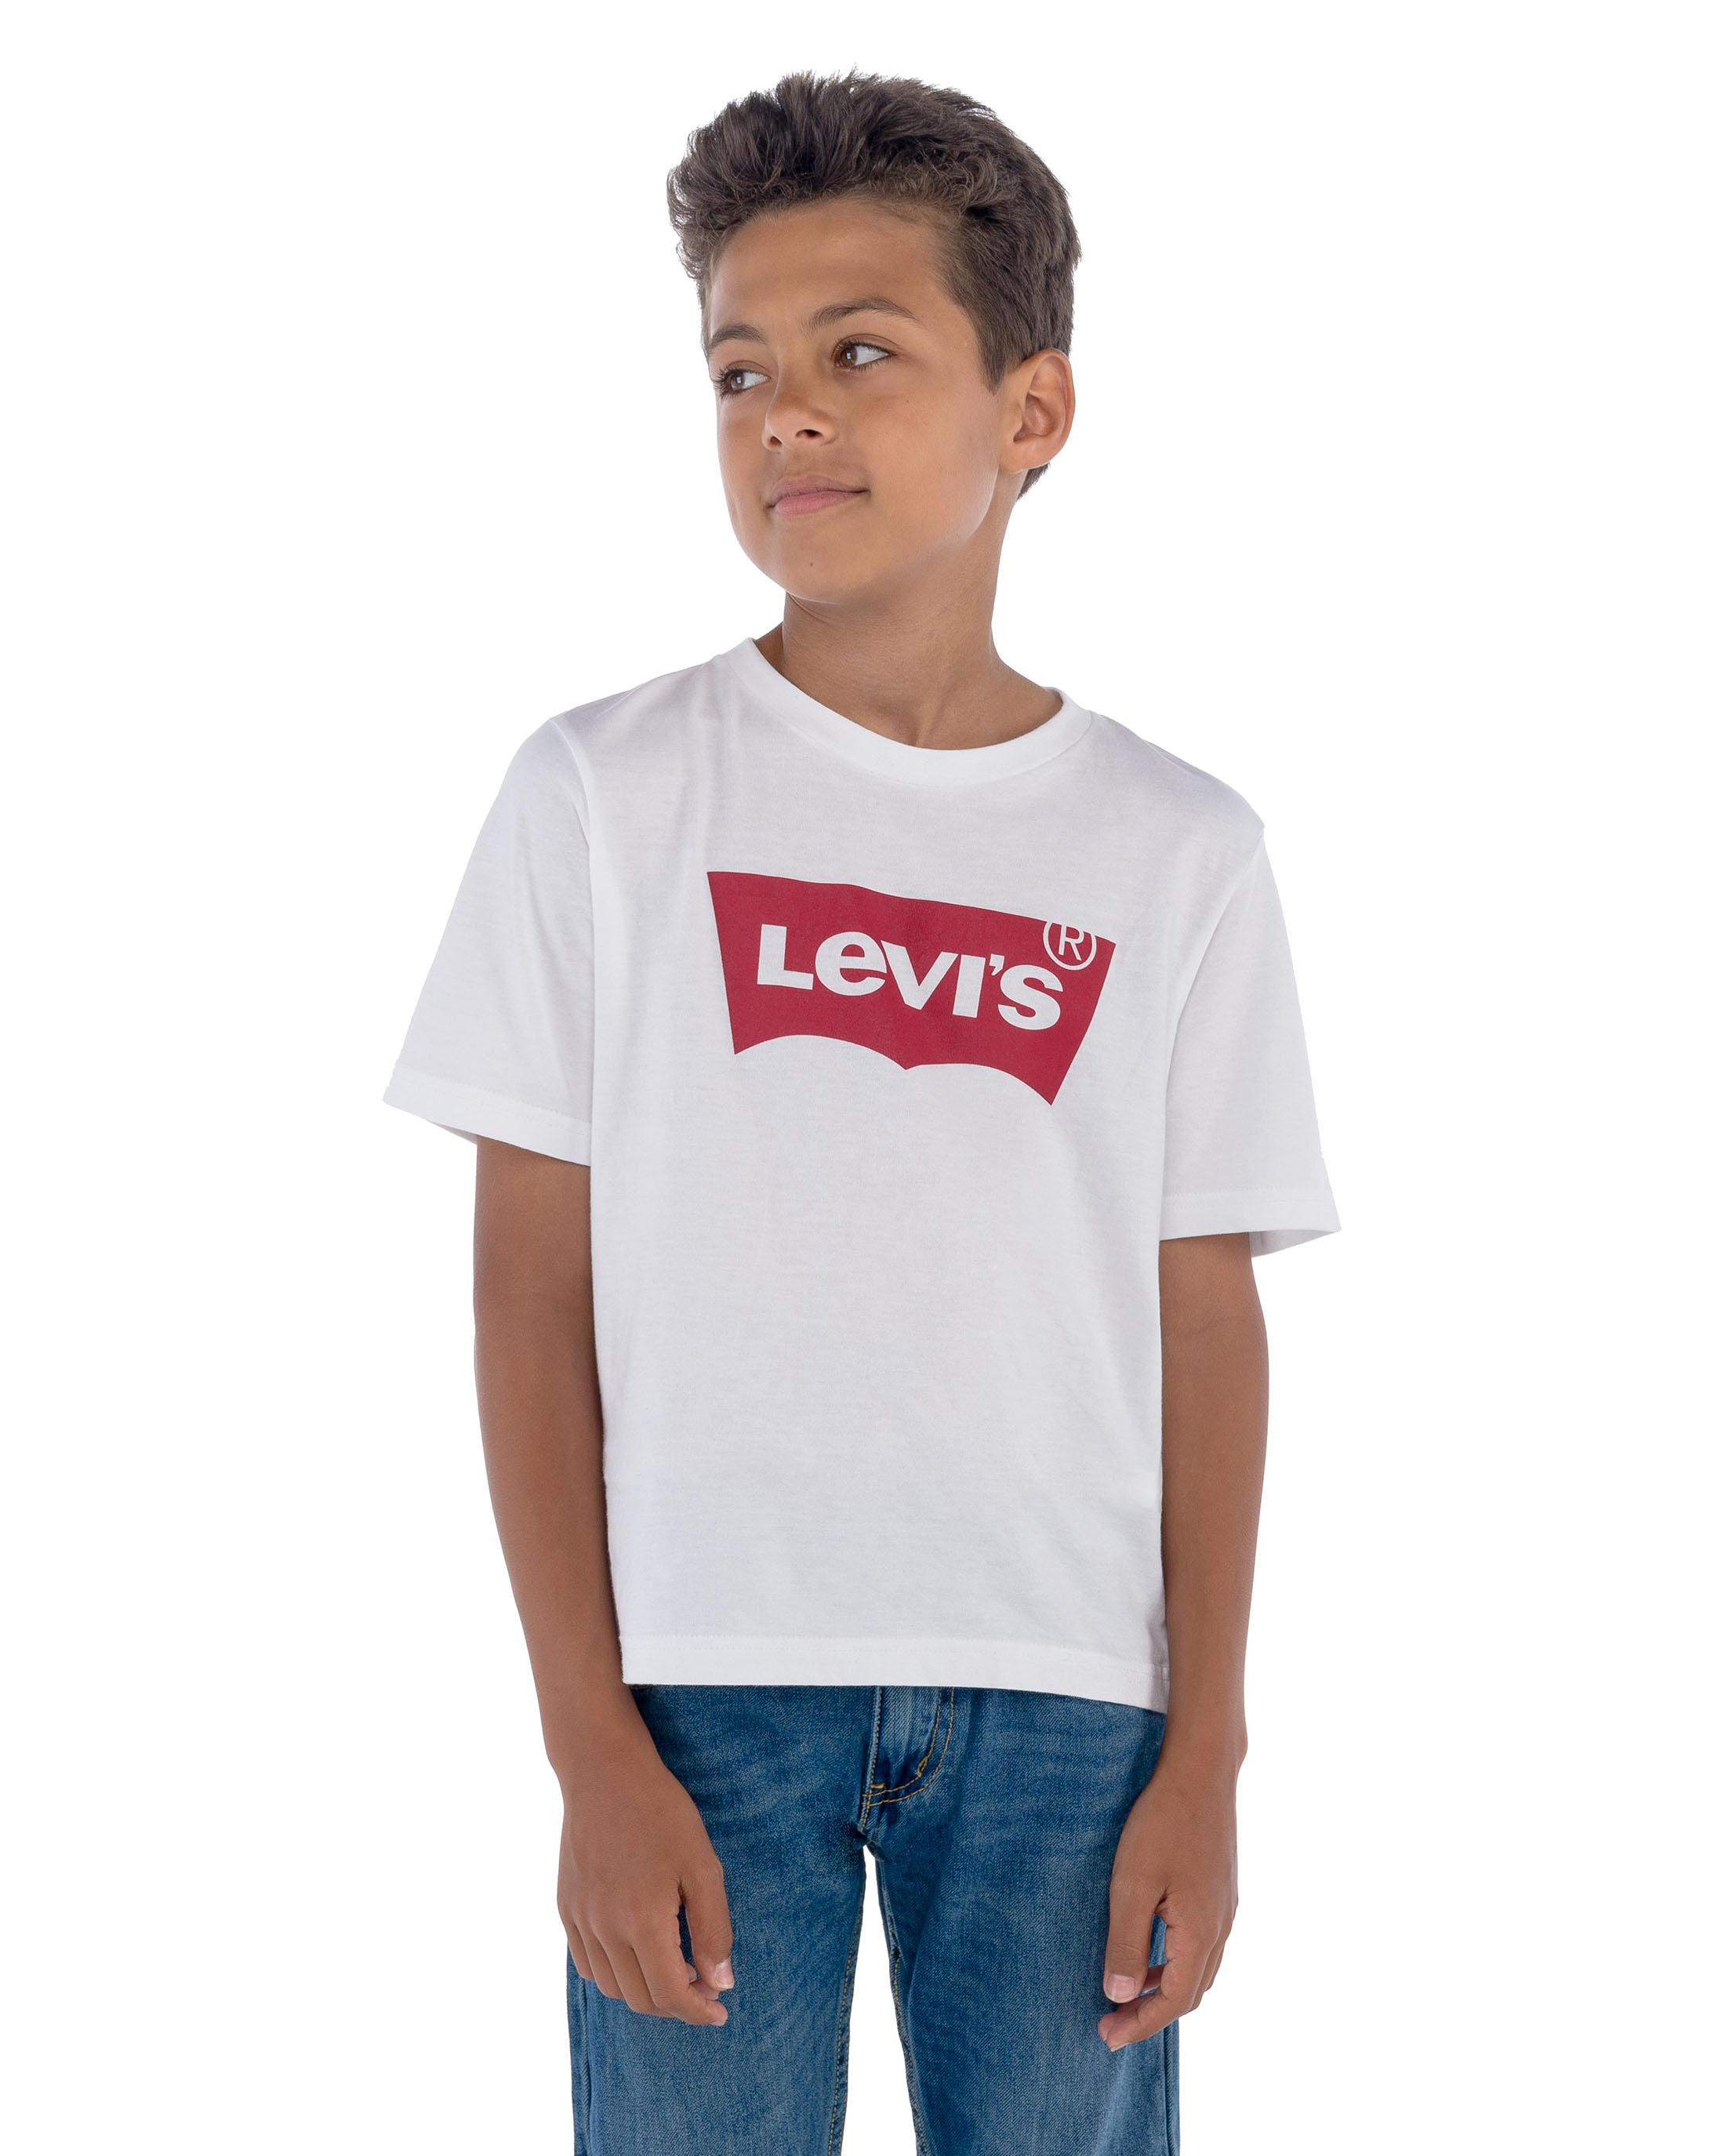 Levi's Boys' Short Sleeve Batwing T-Shirt, Sizes 4-18 - image 5 of 7